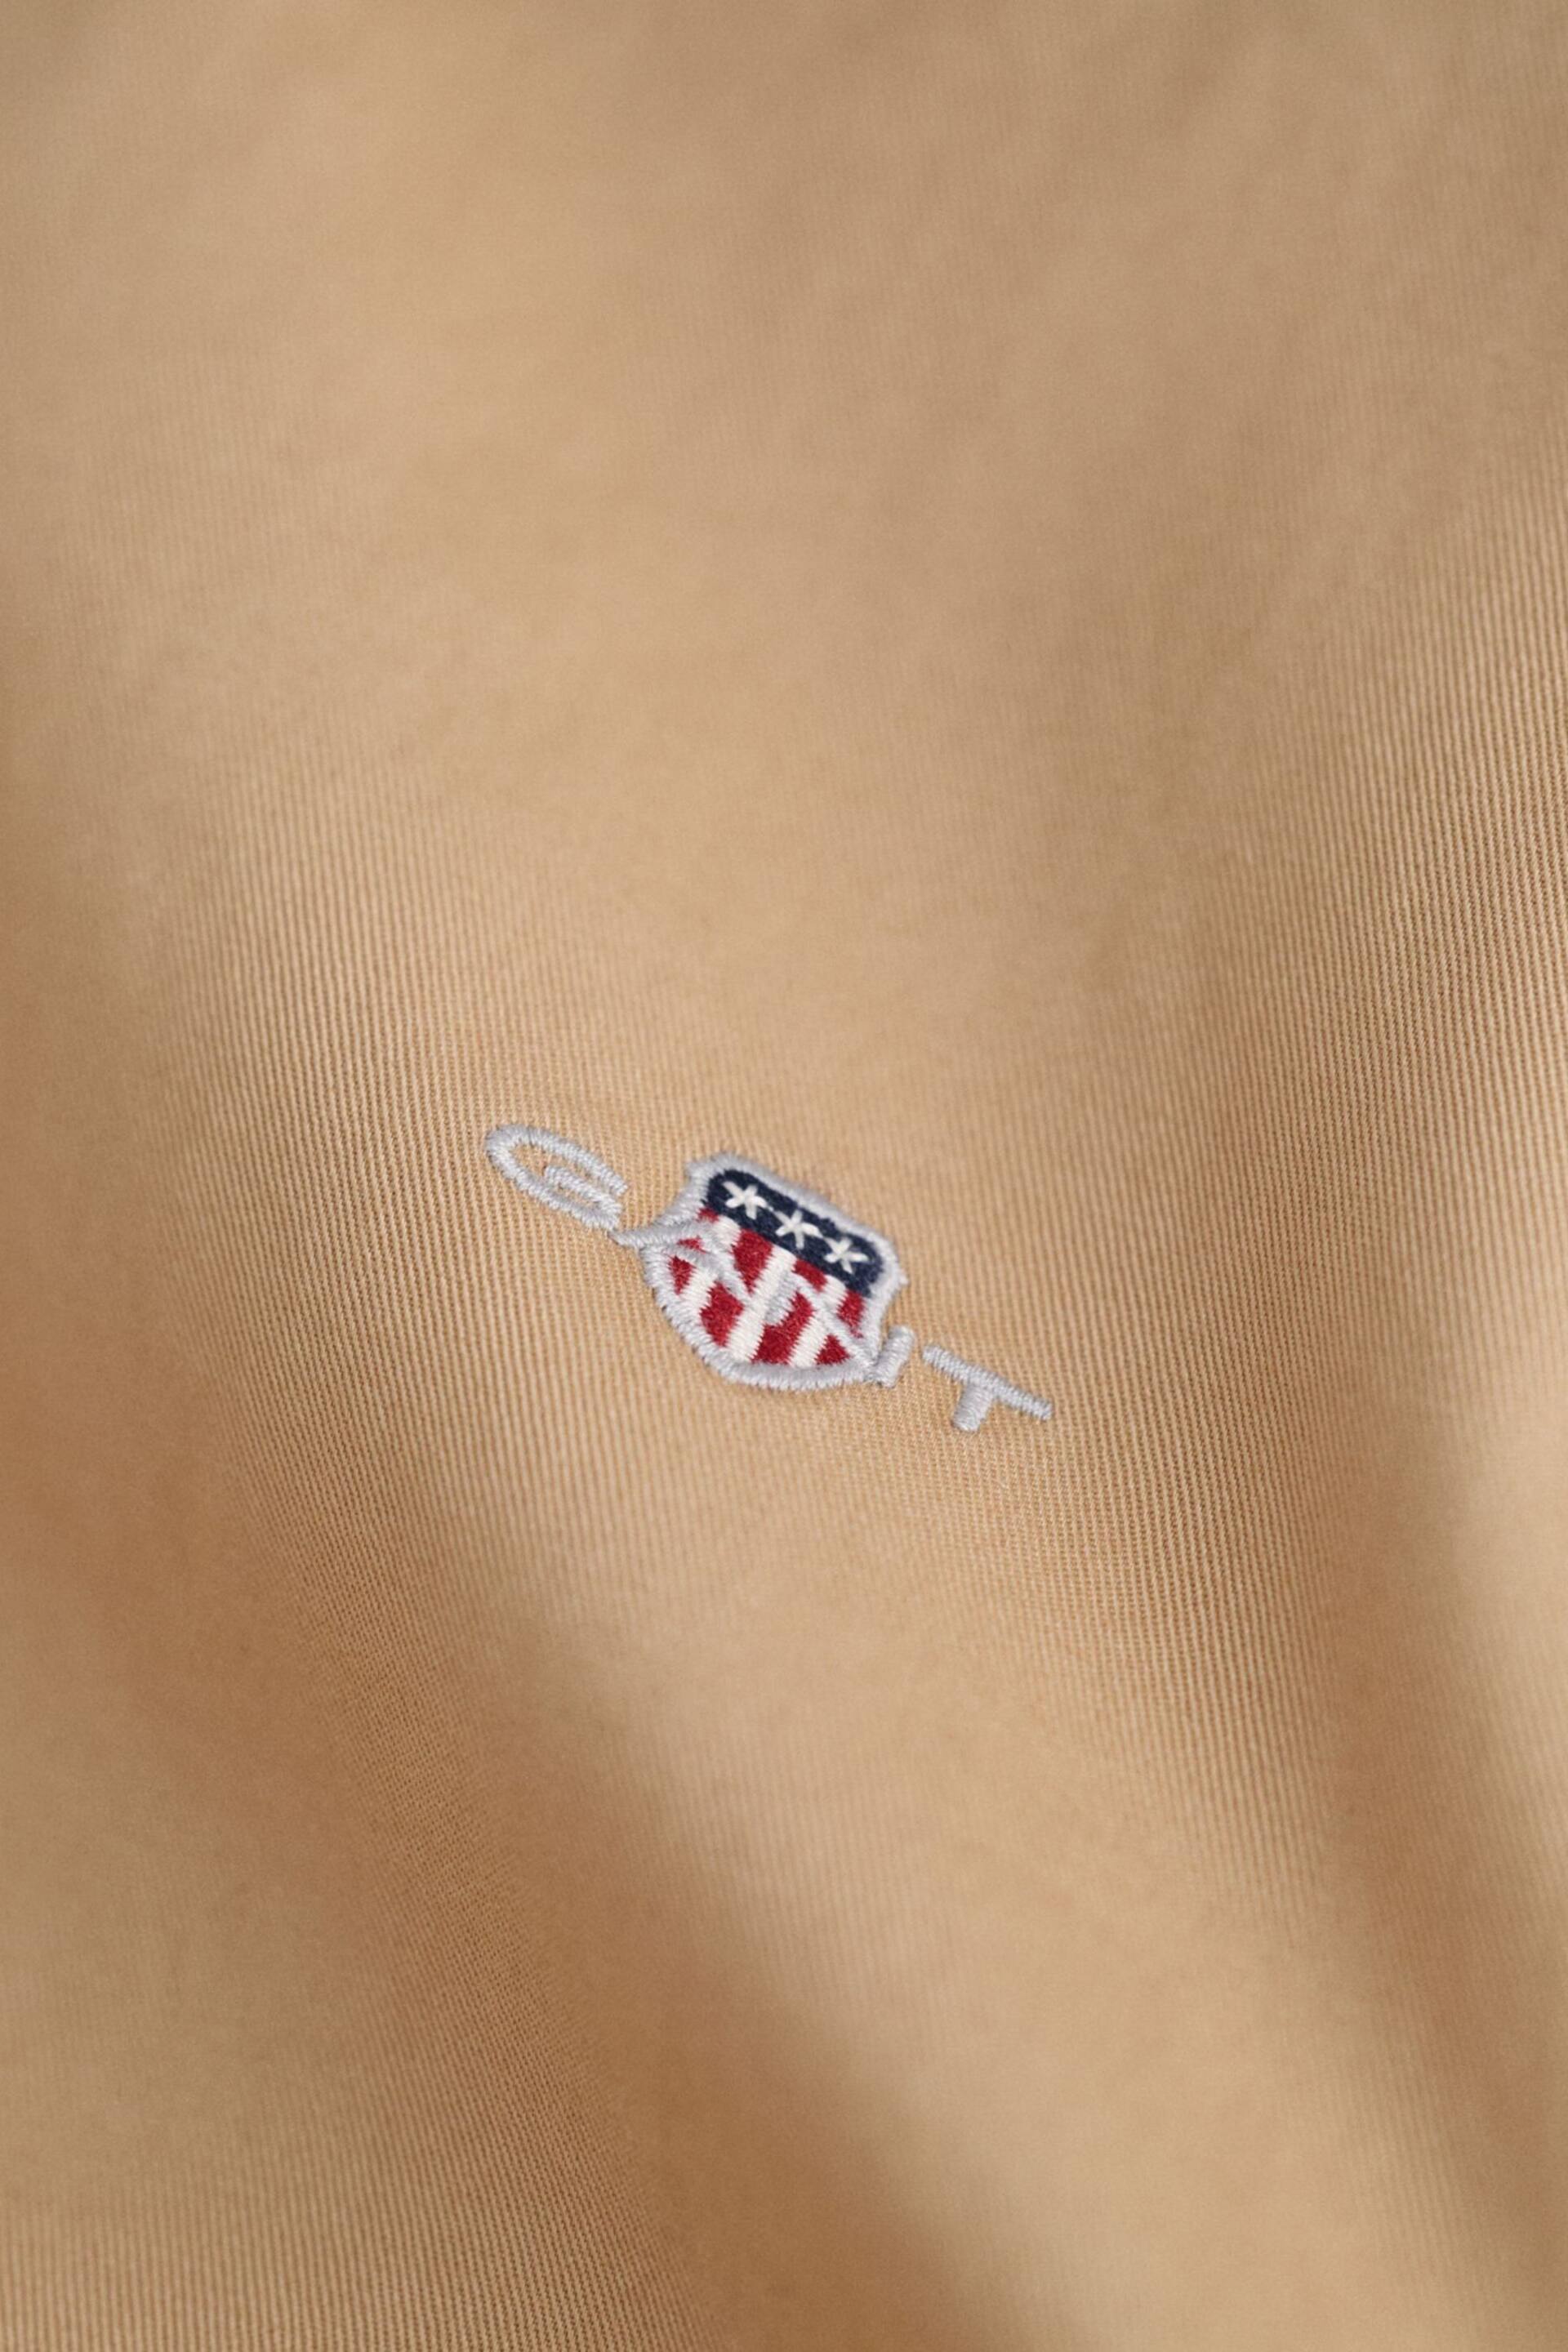 GANT Cotton Jacket - Image 8 of 11